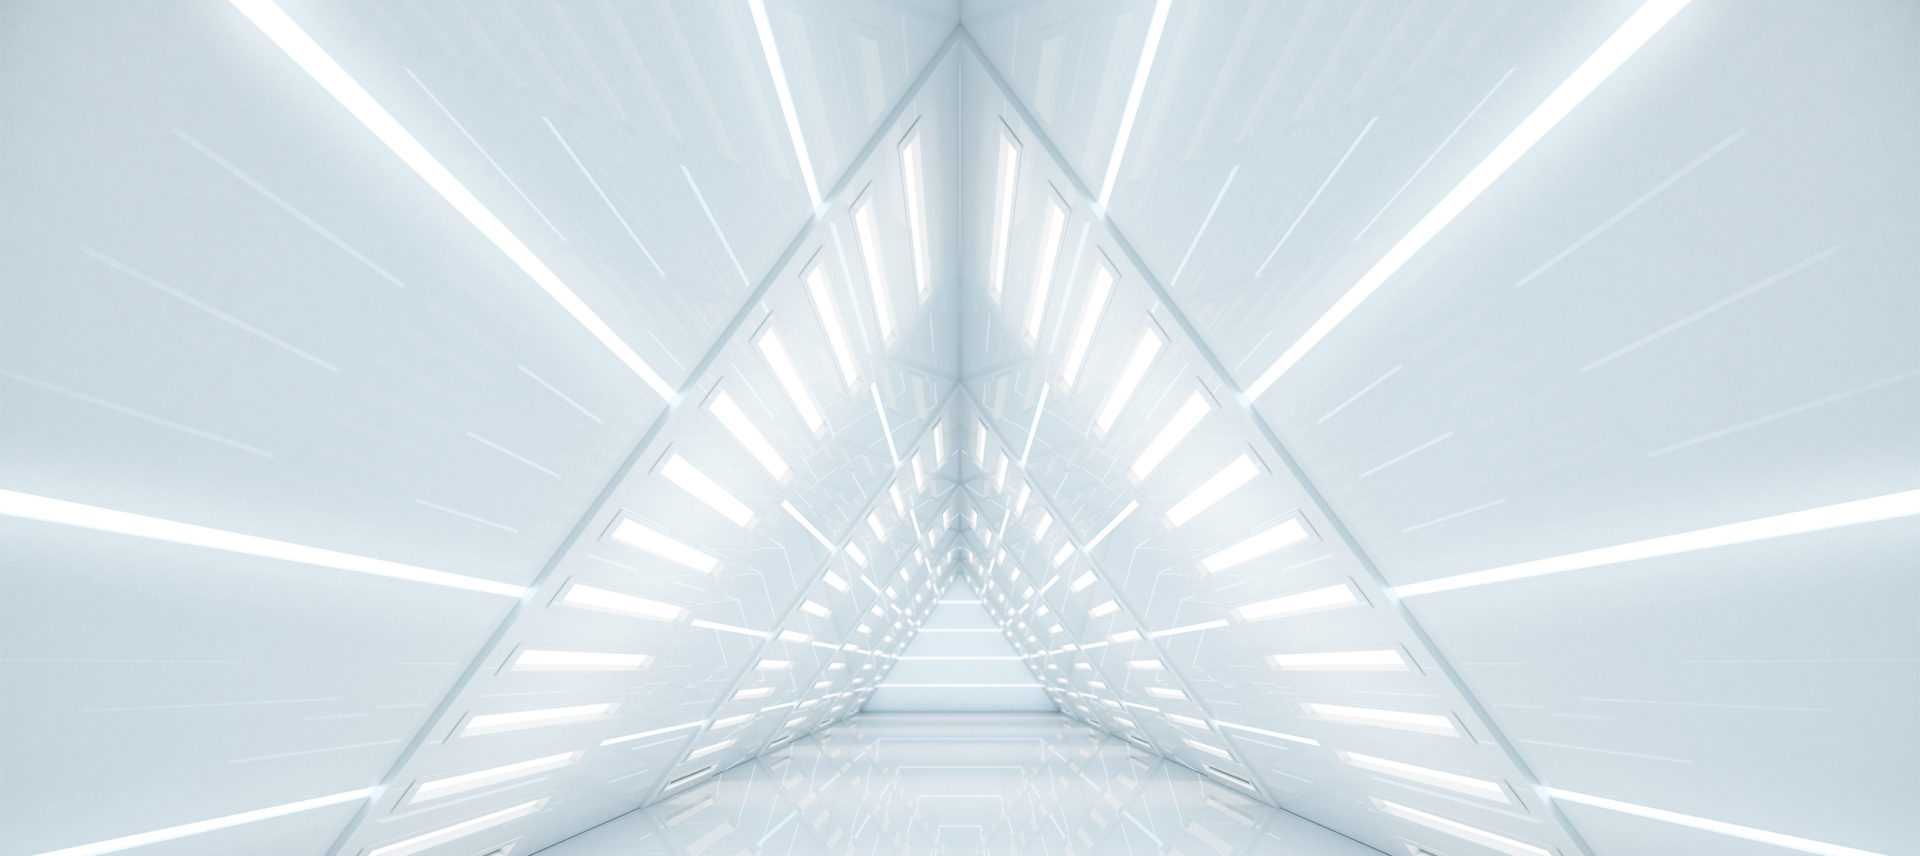 infinite triangular tunnel